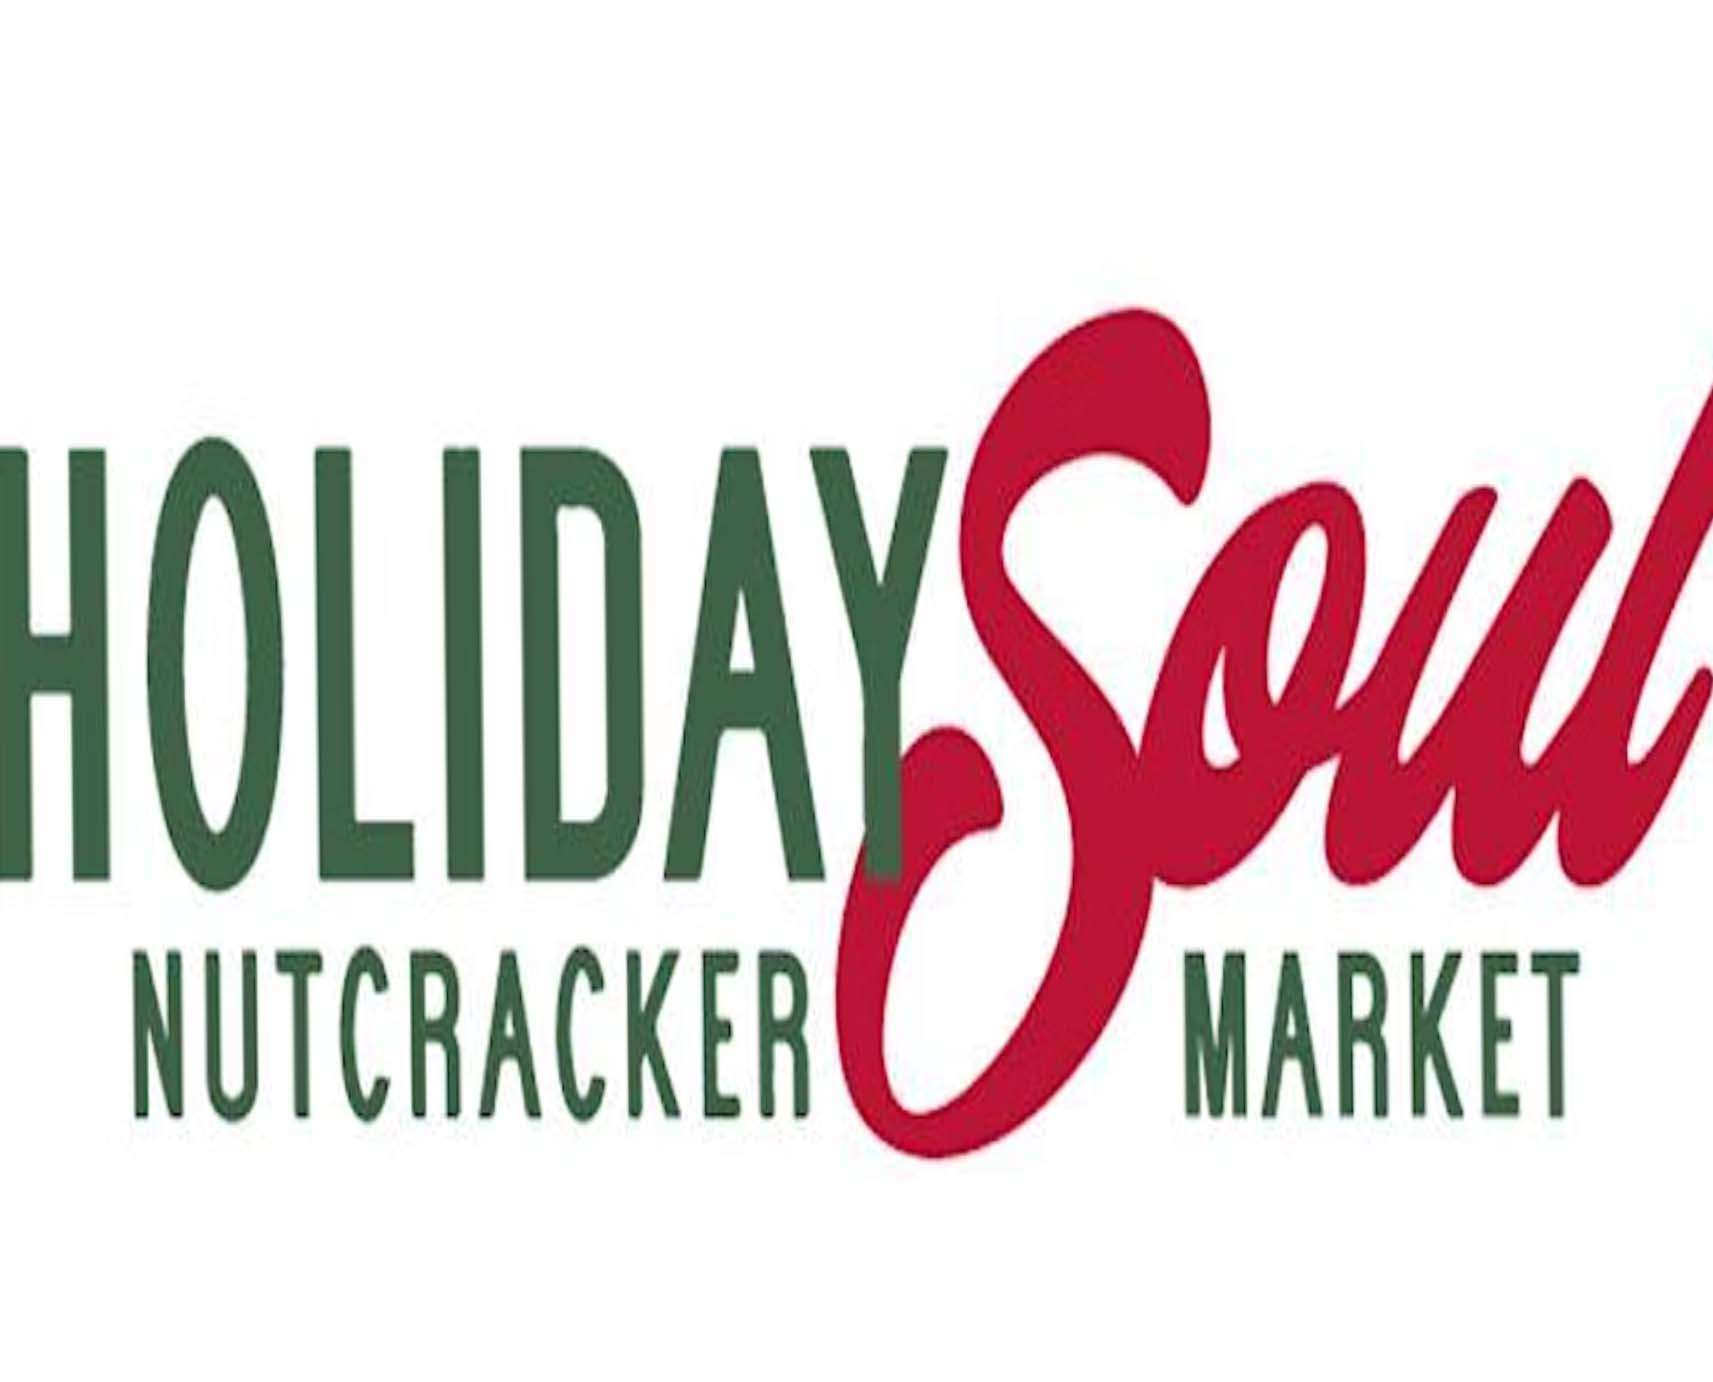 holiday soul nutcracker market